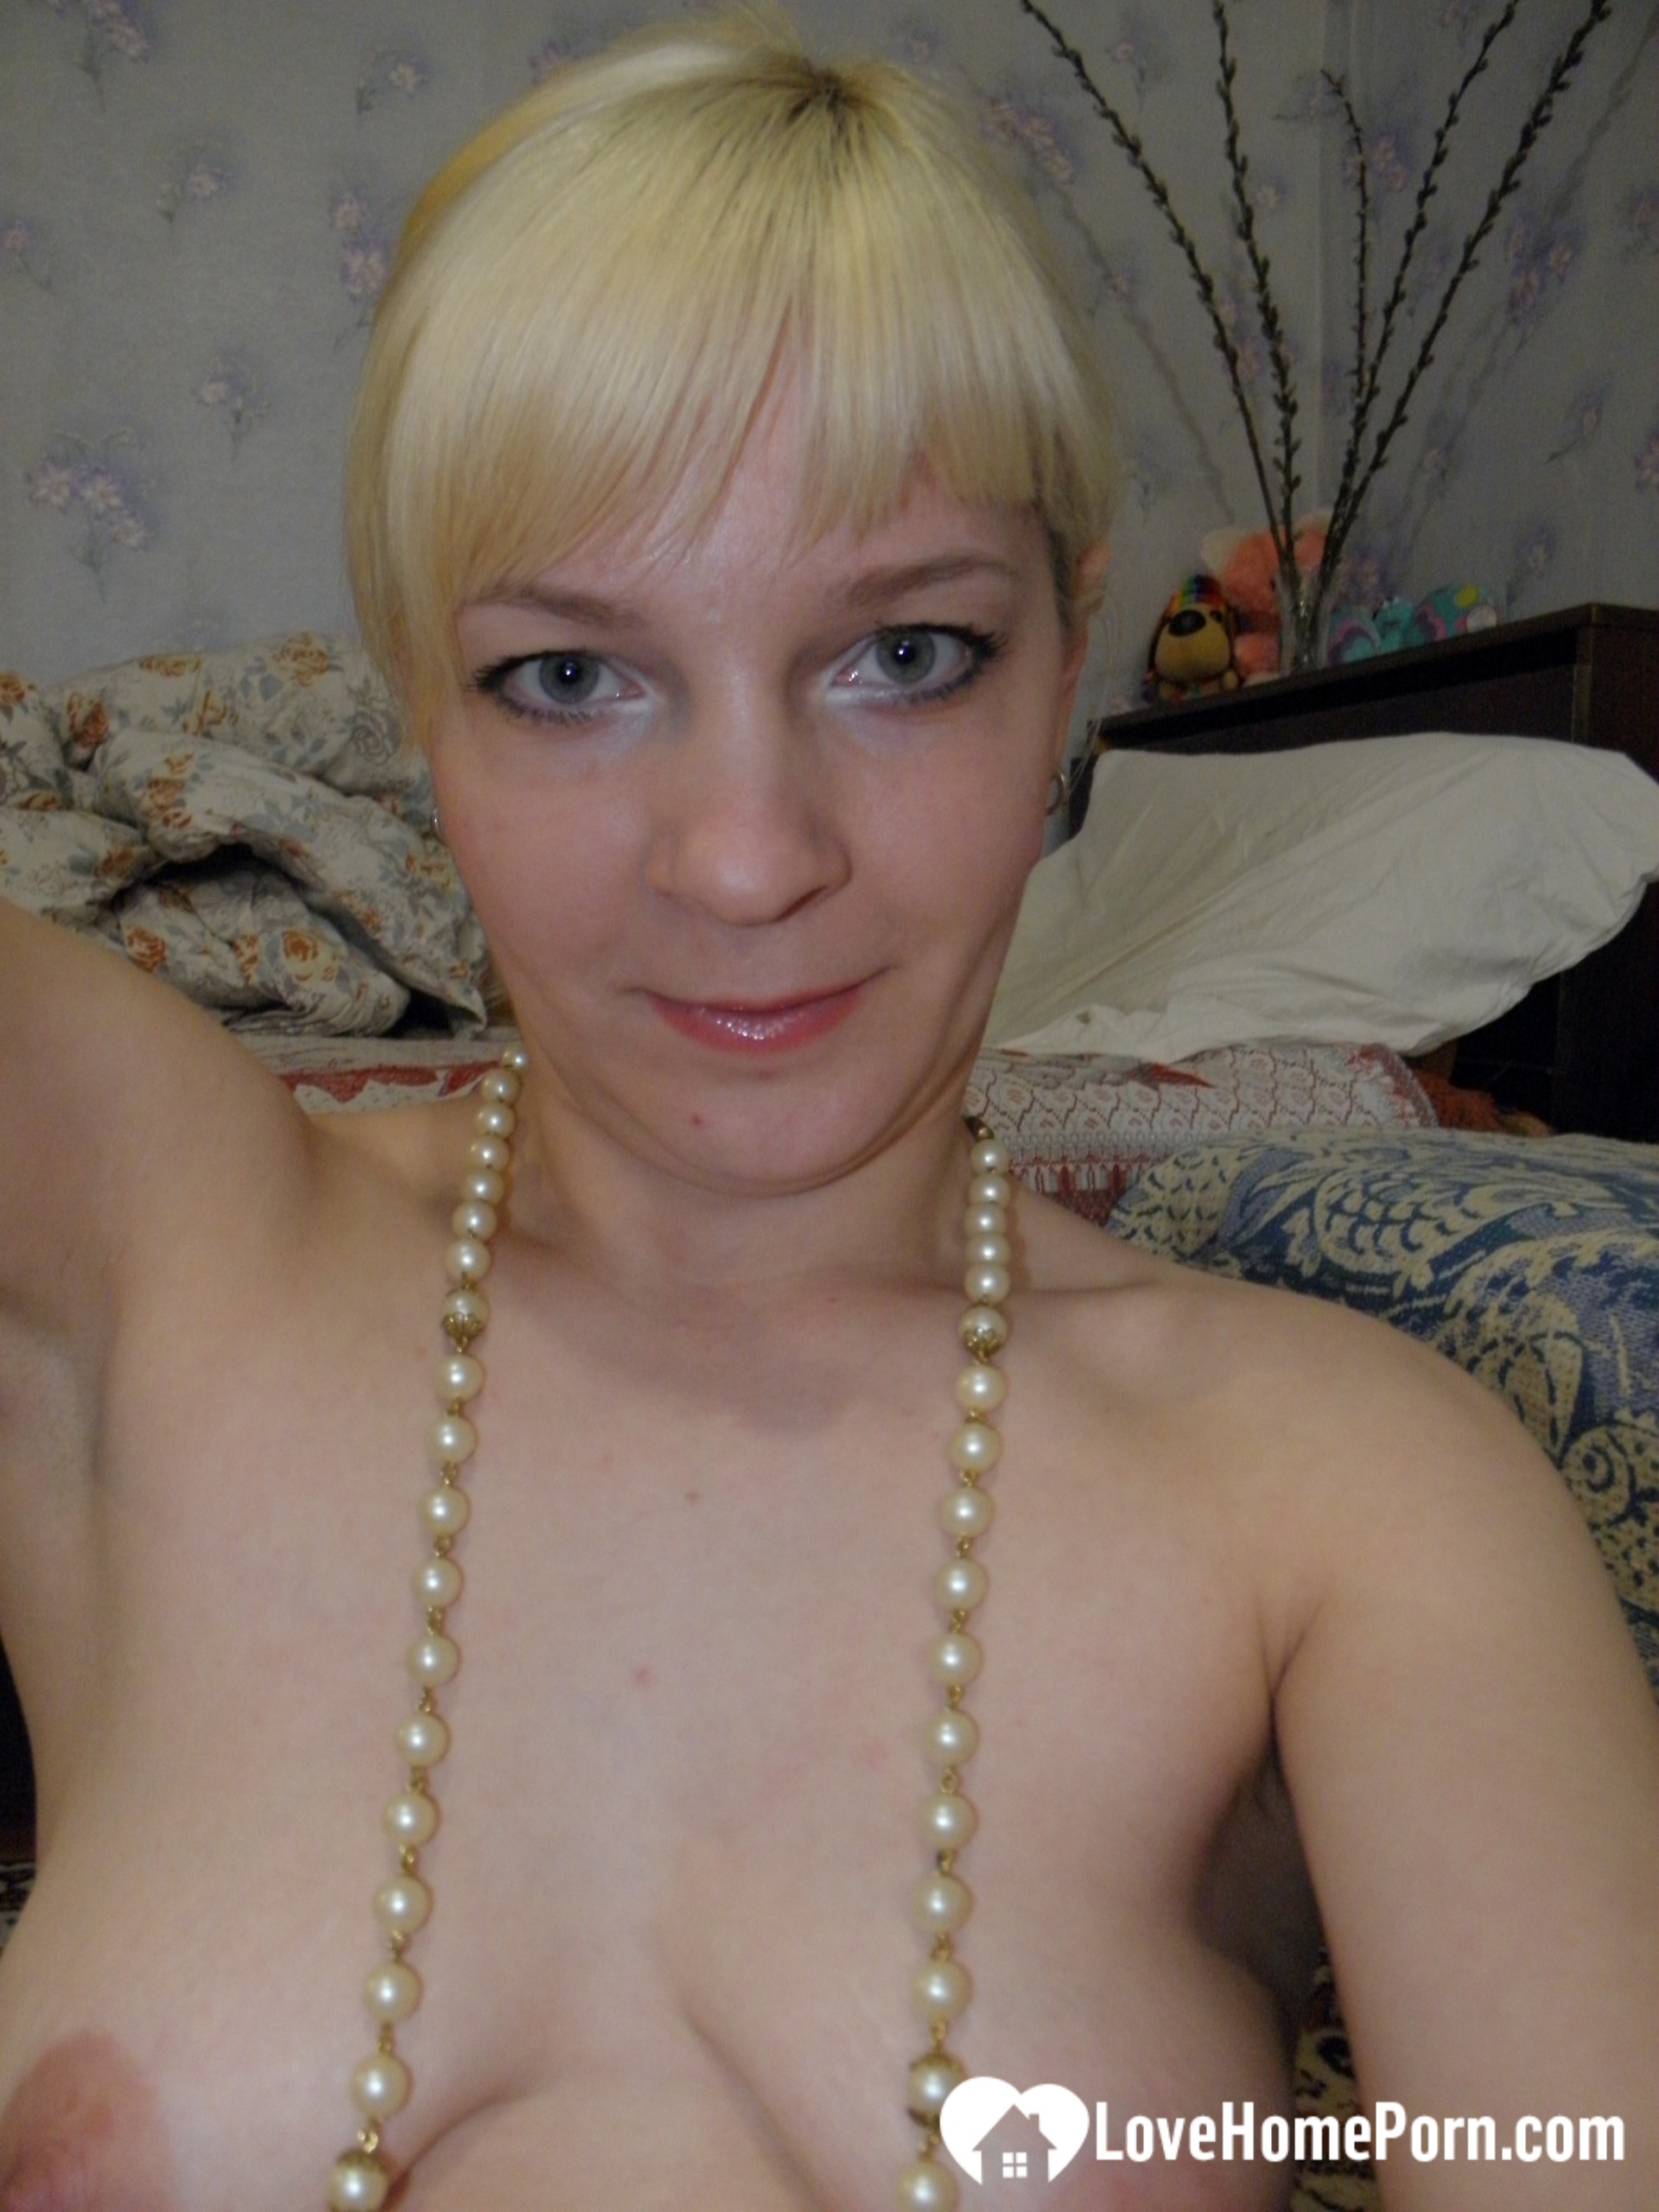 Aroused blonde in stockings taking naughty selfies